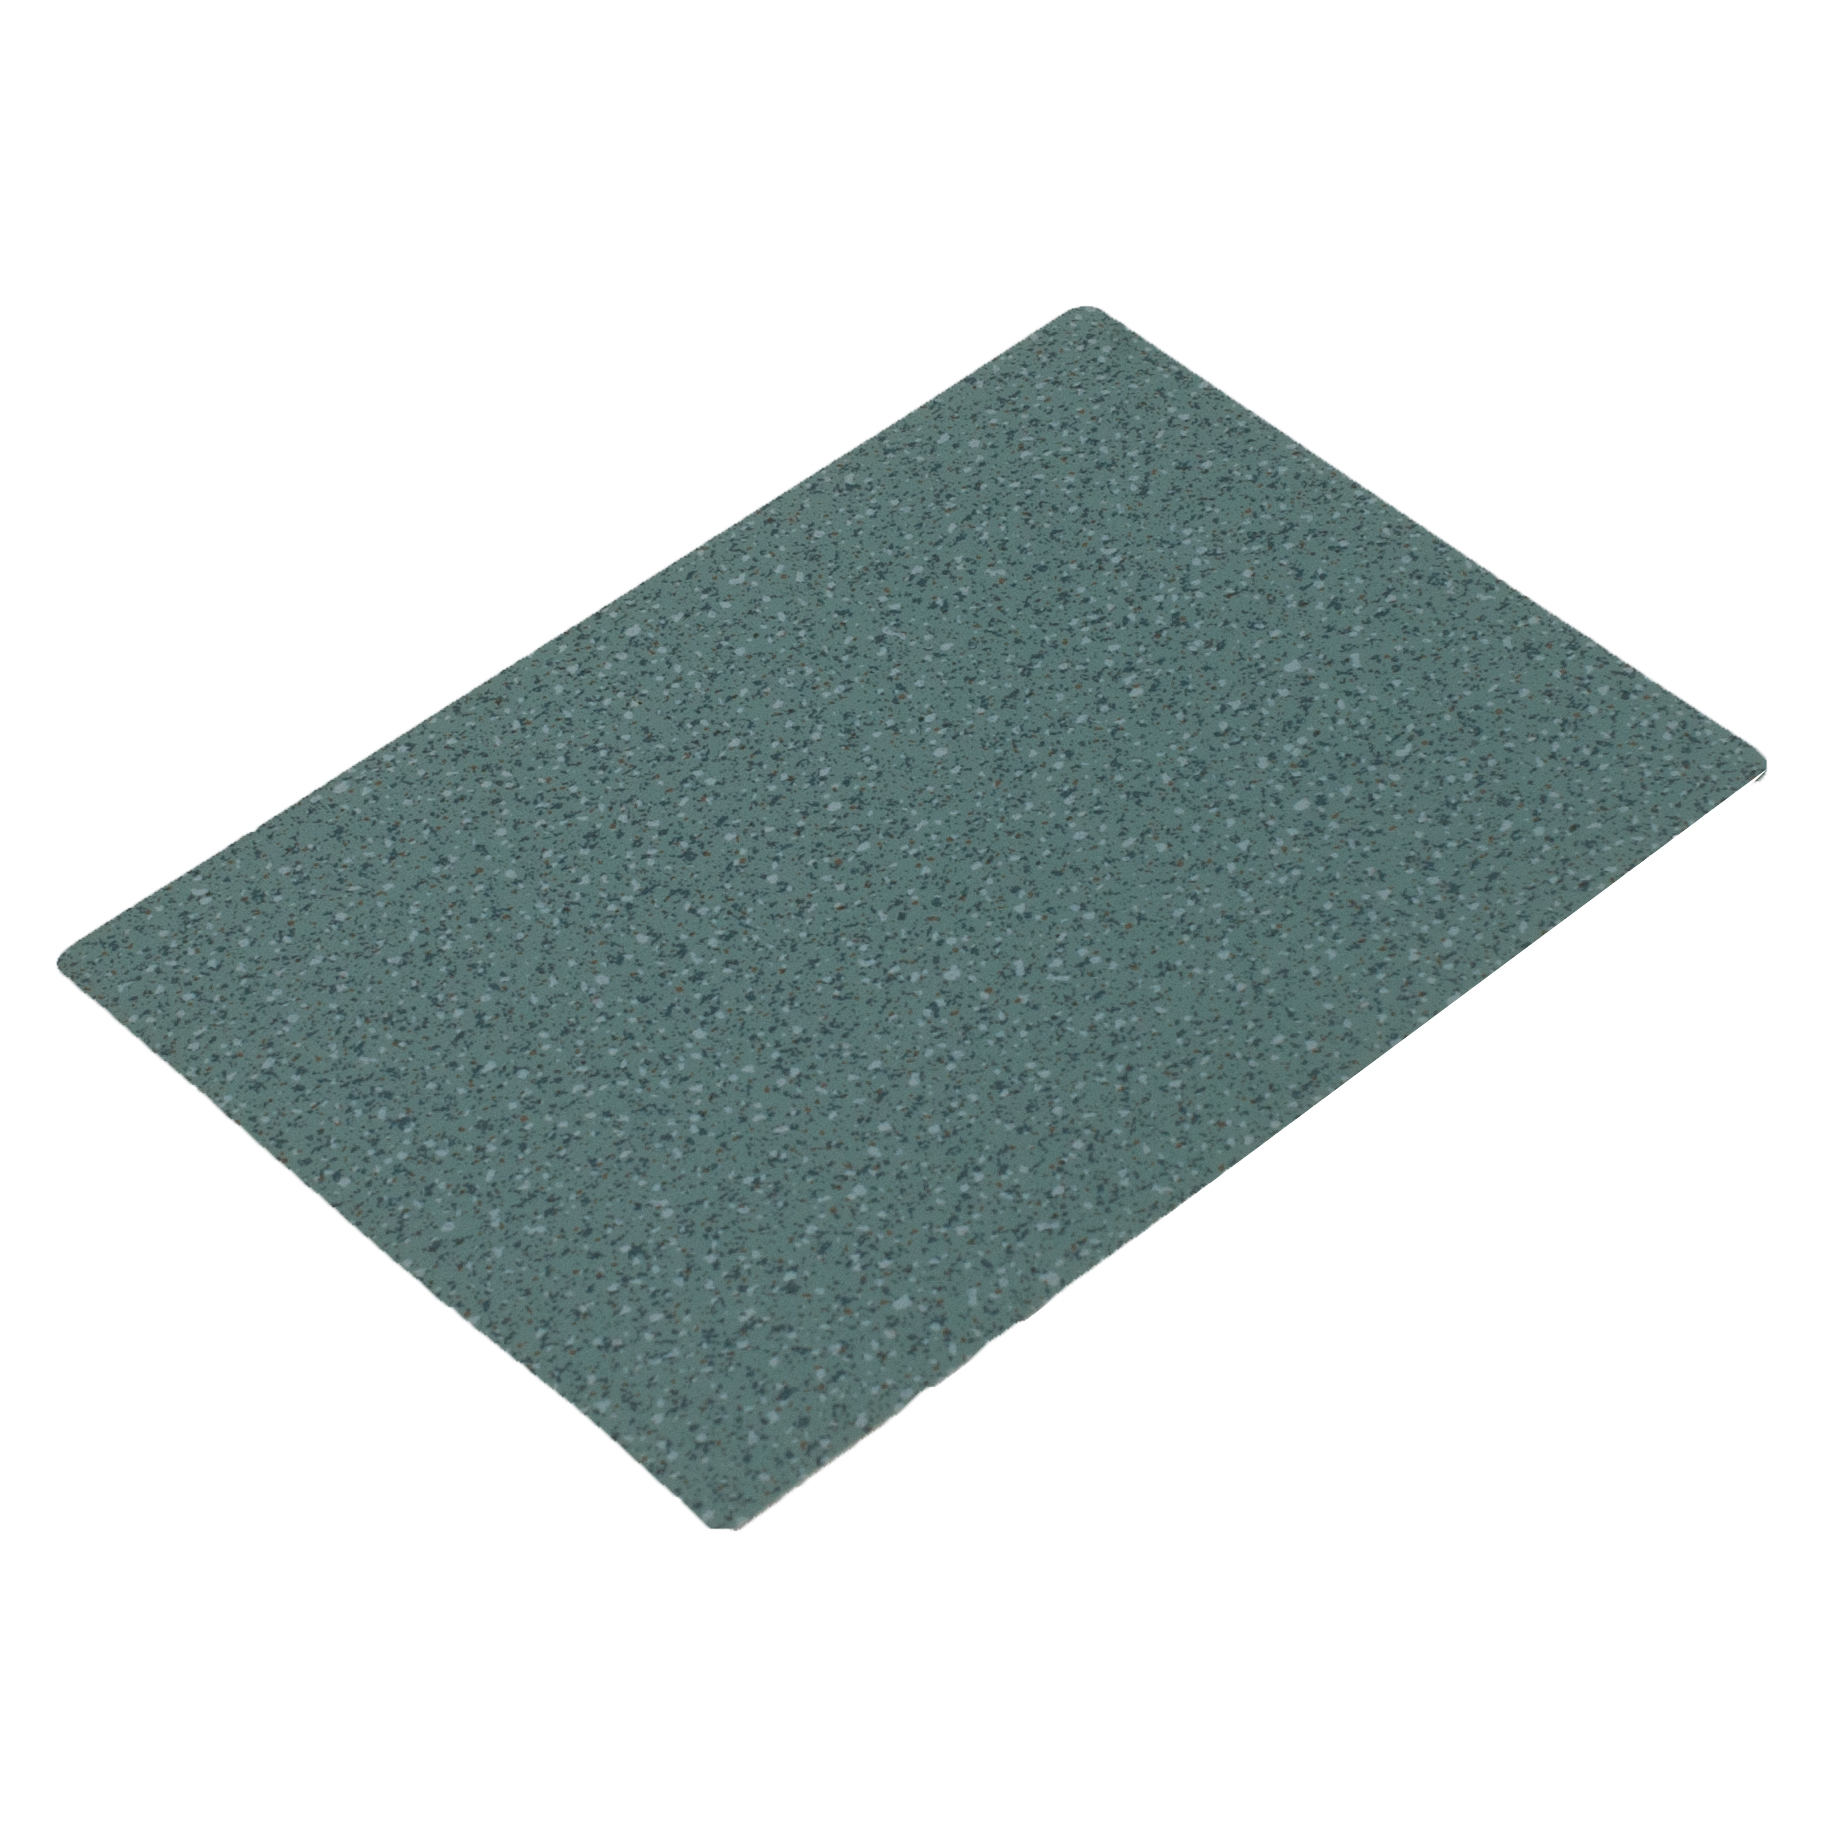 Flexible PVC Flooring For Basement Carpet